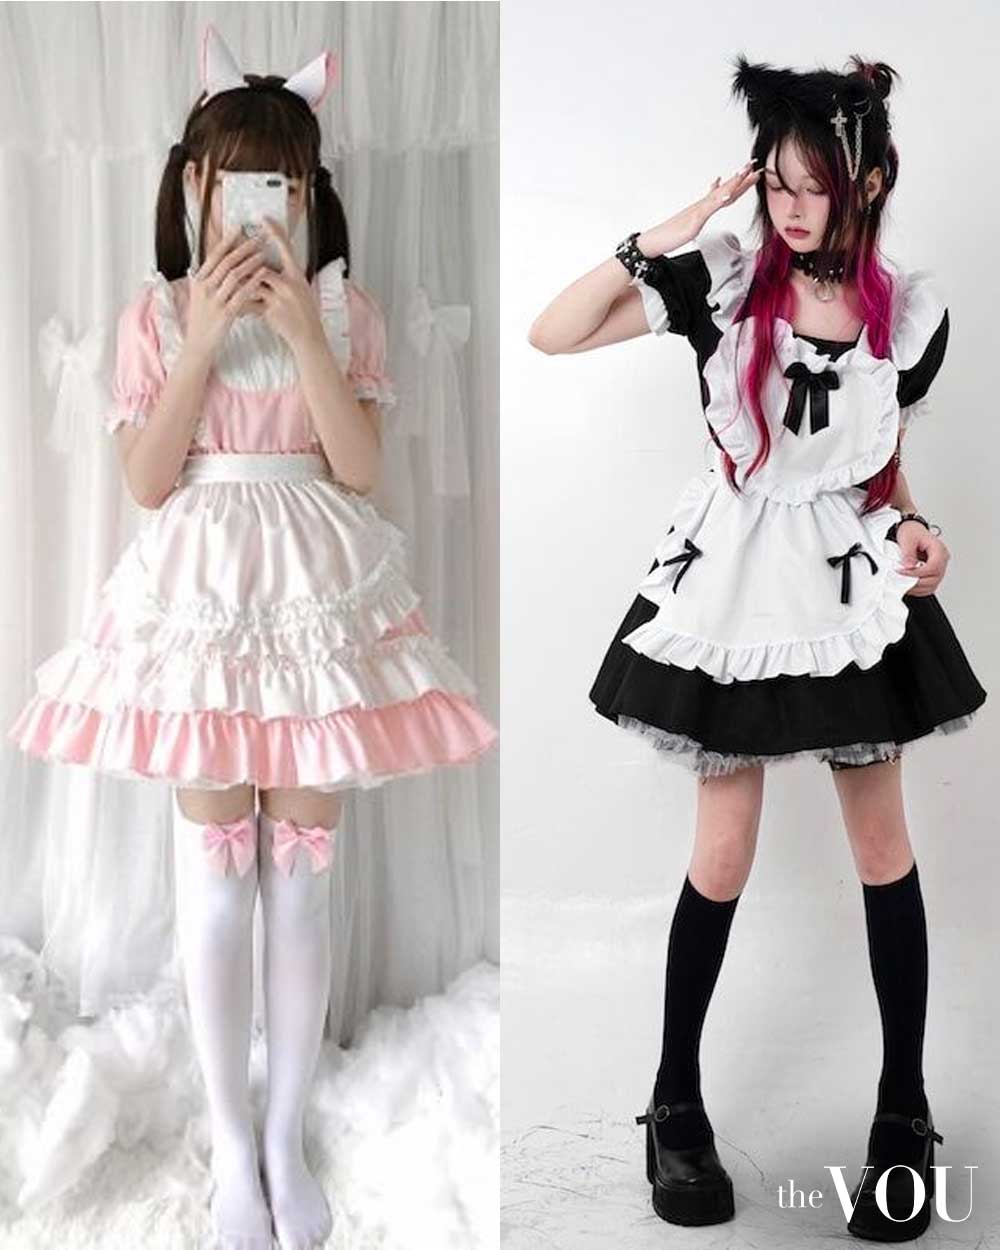 maid kawaii outfit inspiration